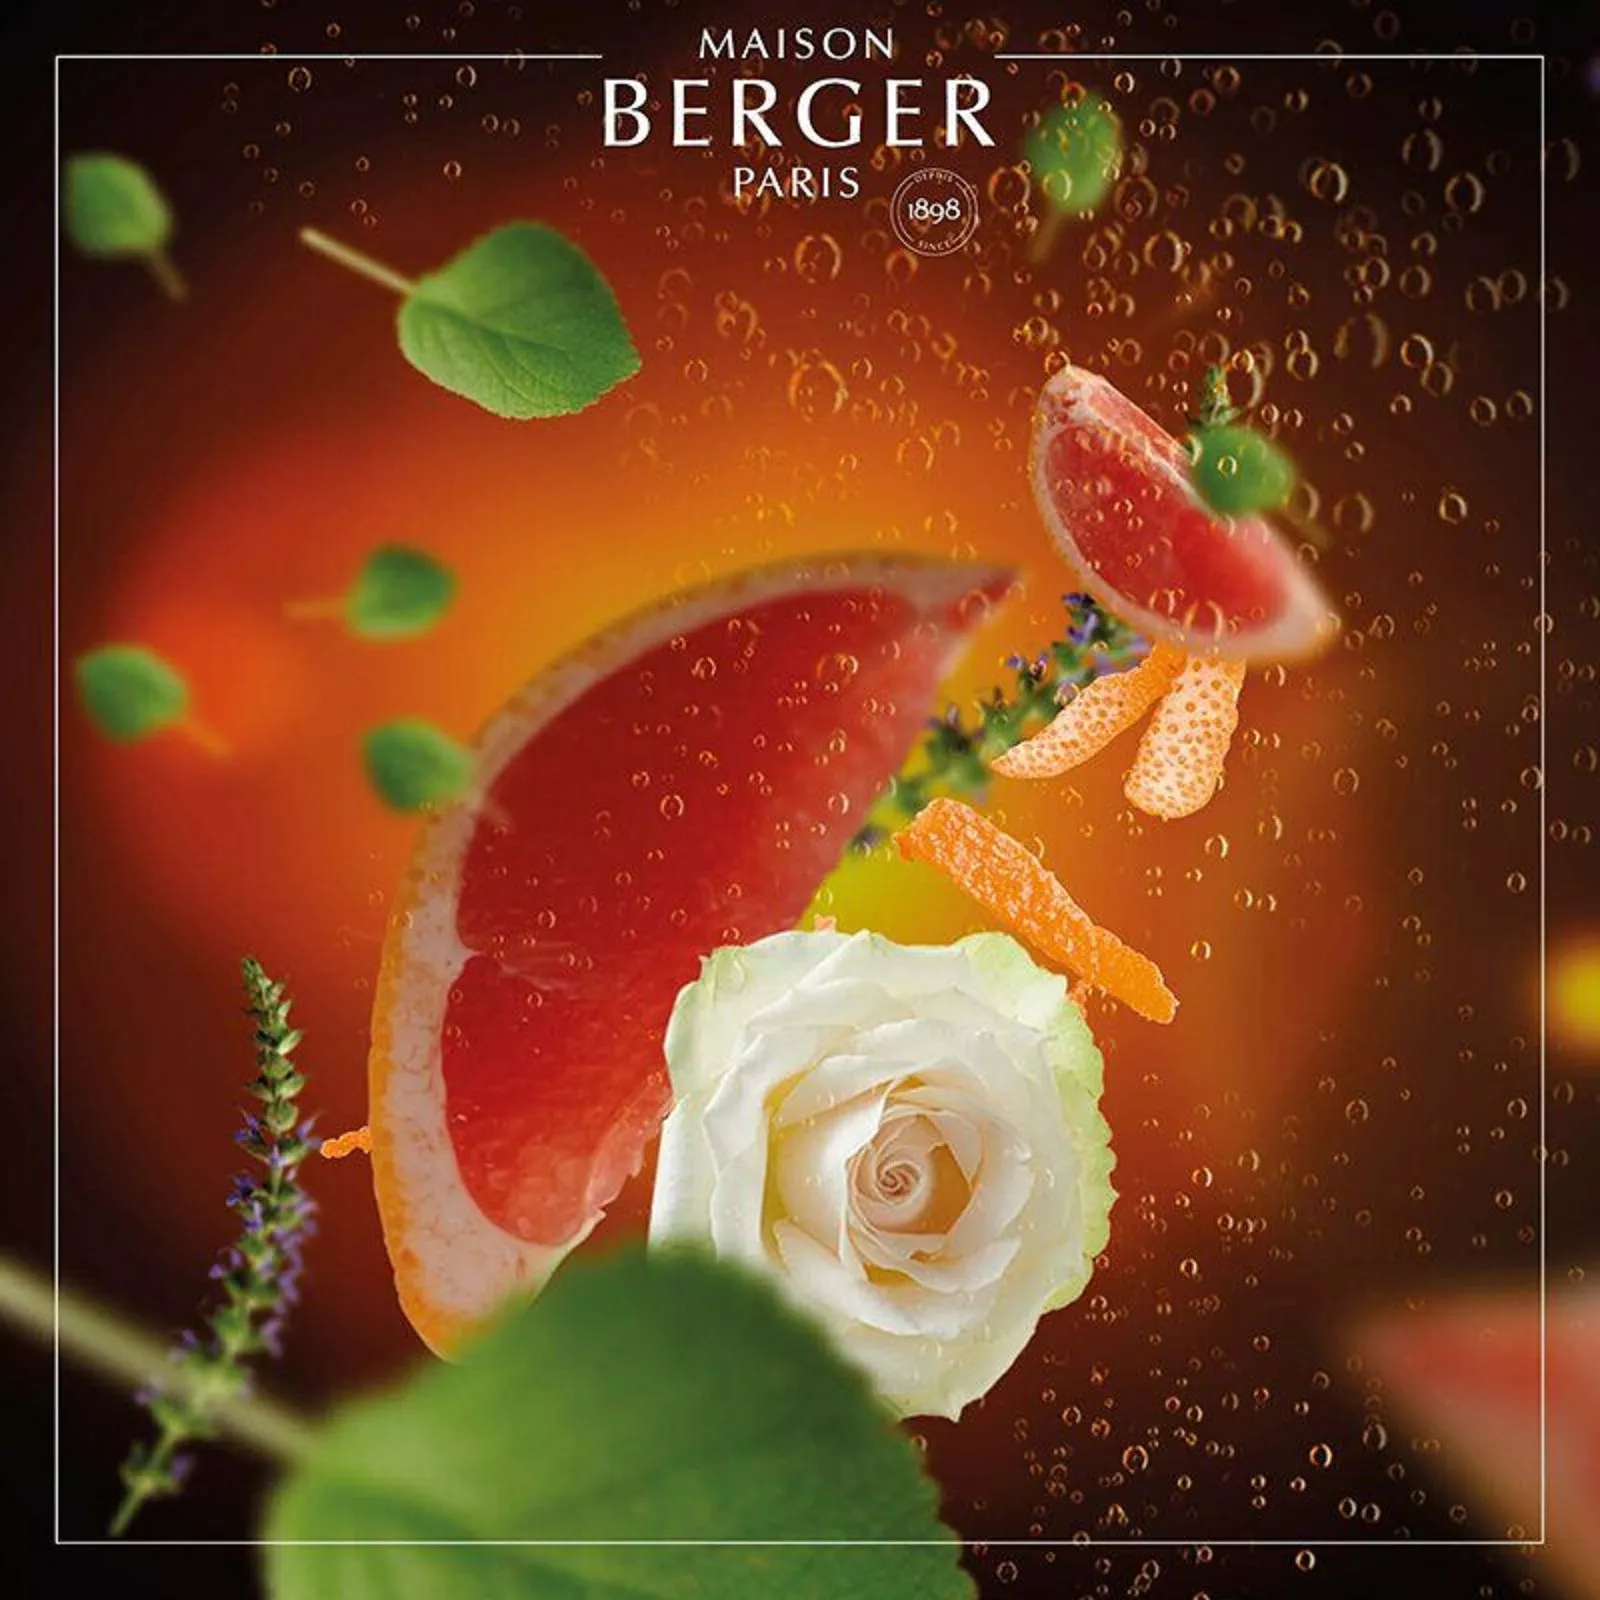 Наполнитель сменный для аромалампы Maison Berger Paris Exquisite Sparkle, объем 0,5 л (115188) - Фото nav 2